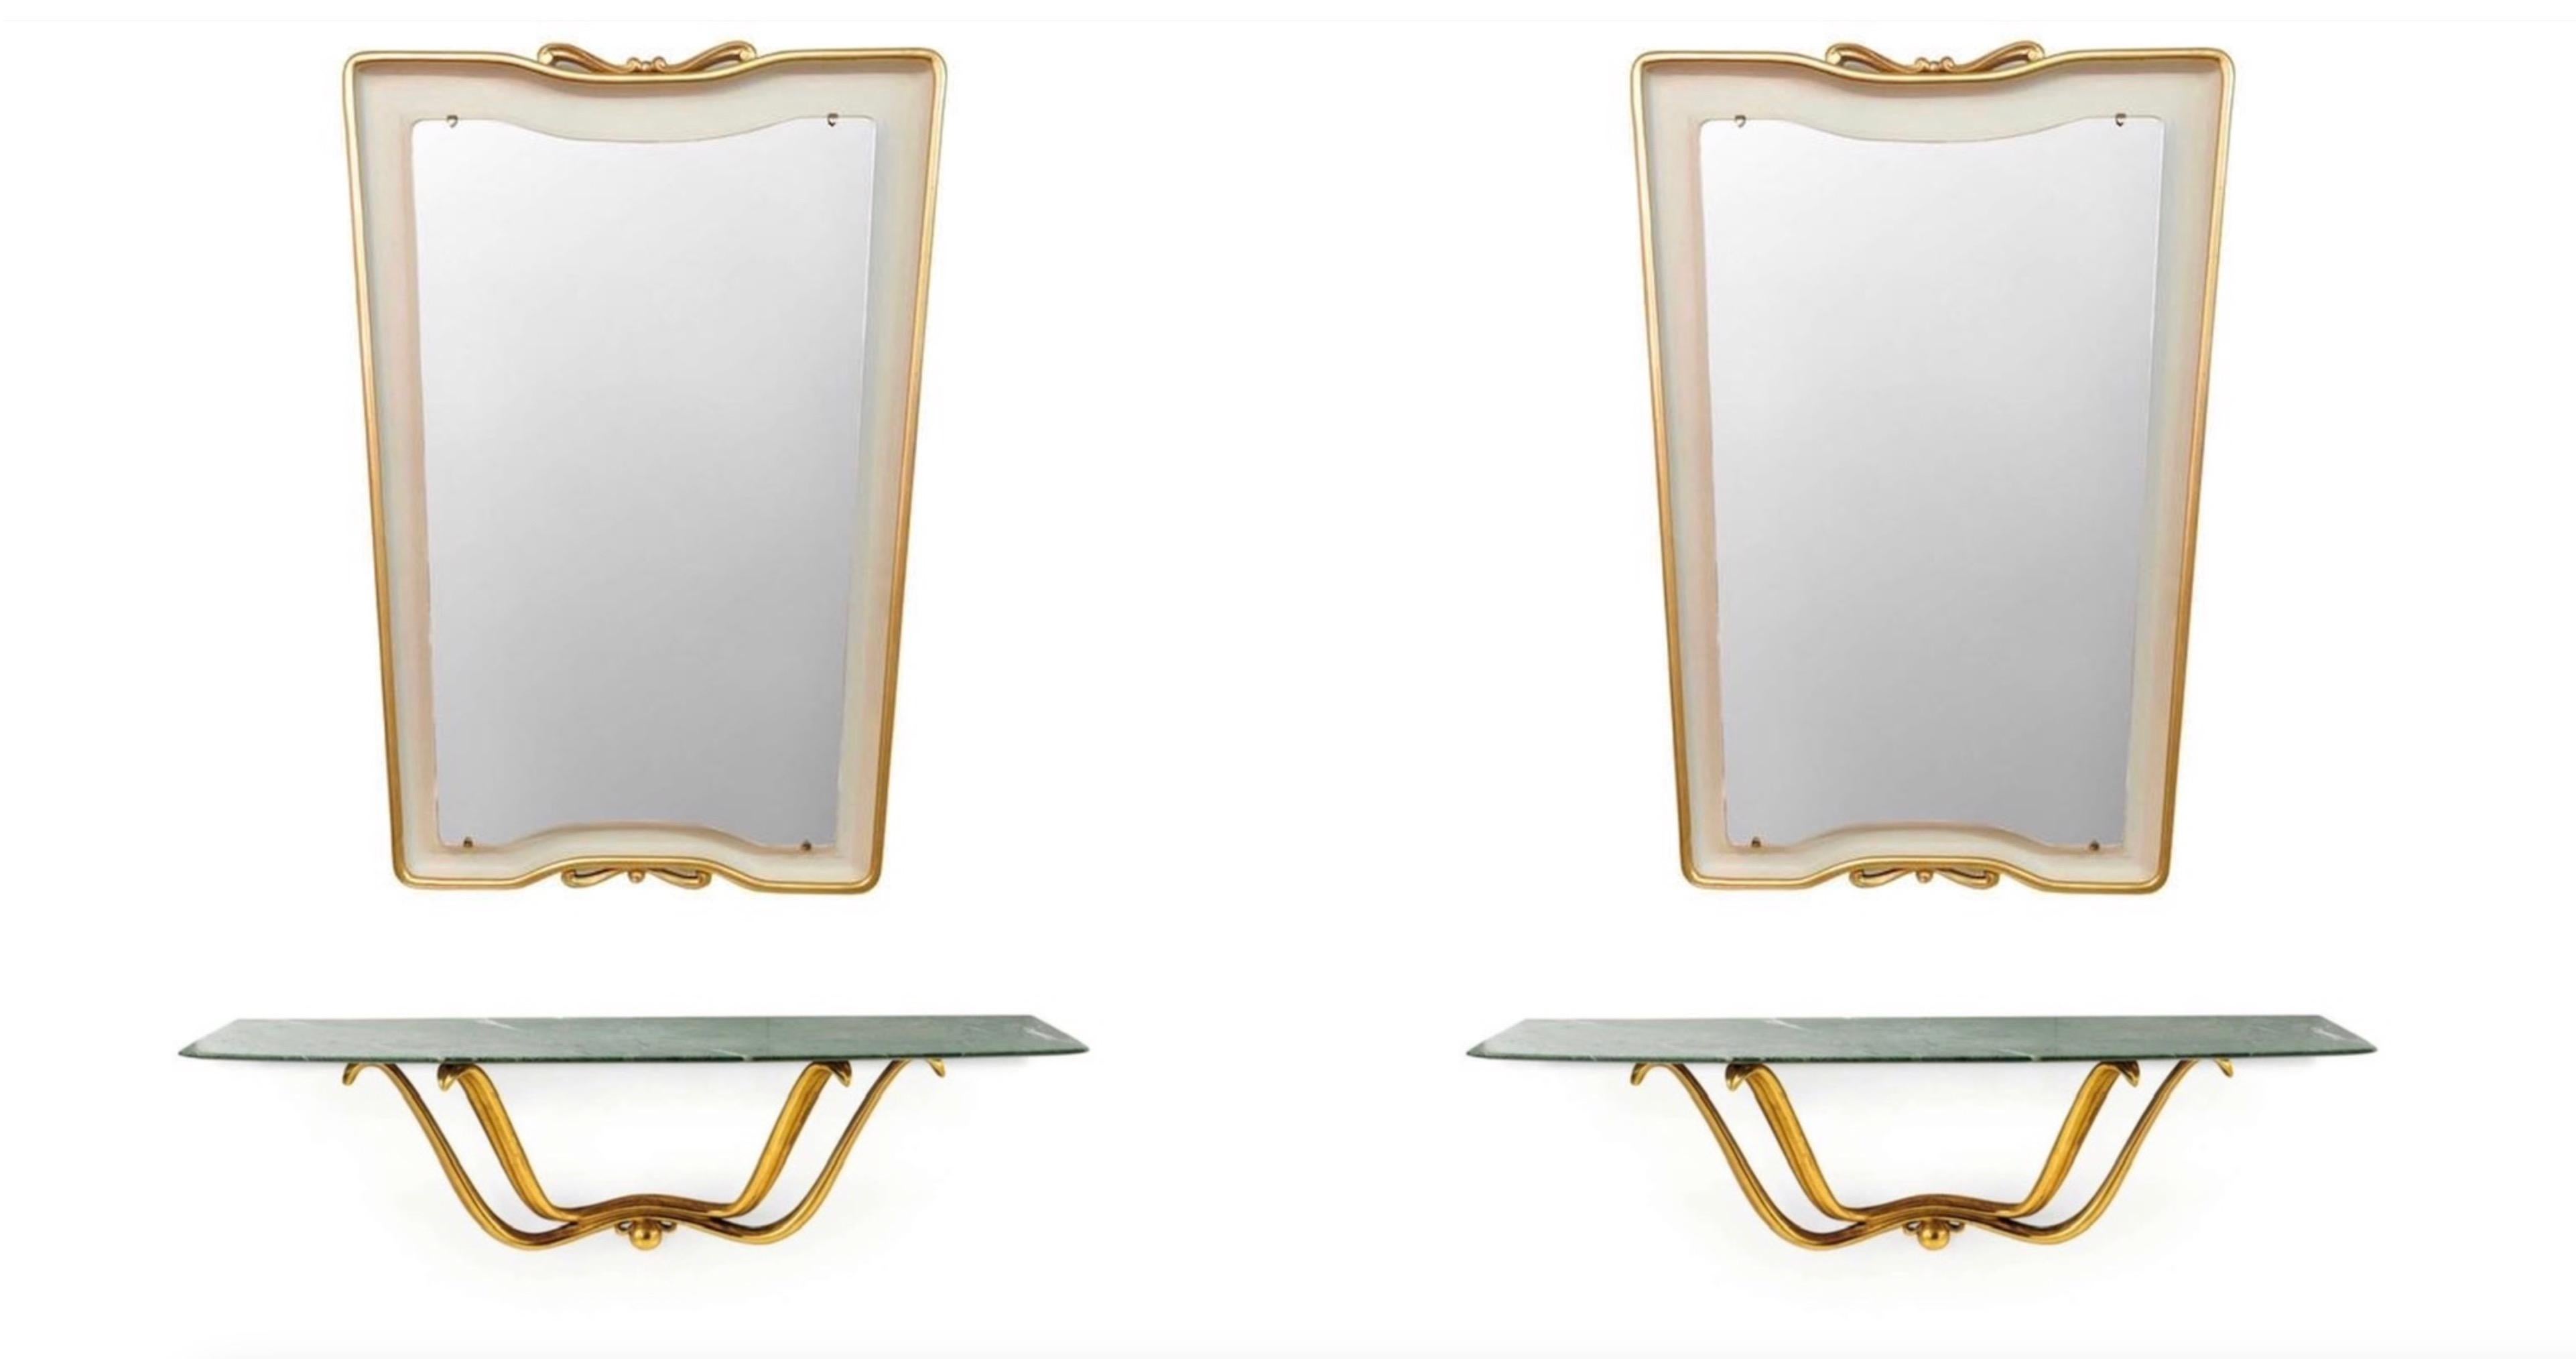 Une paire exceptionnelle et extrêmement rare de consoles flottantes et de miroirs conçus par Osvaldo Borsani.
Console murale en bois sculpté et doré à l'eau avec un plateau en marbre et des bords en lame de couteau taillés comme une aile